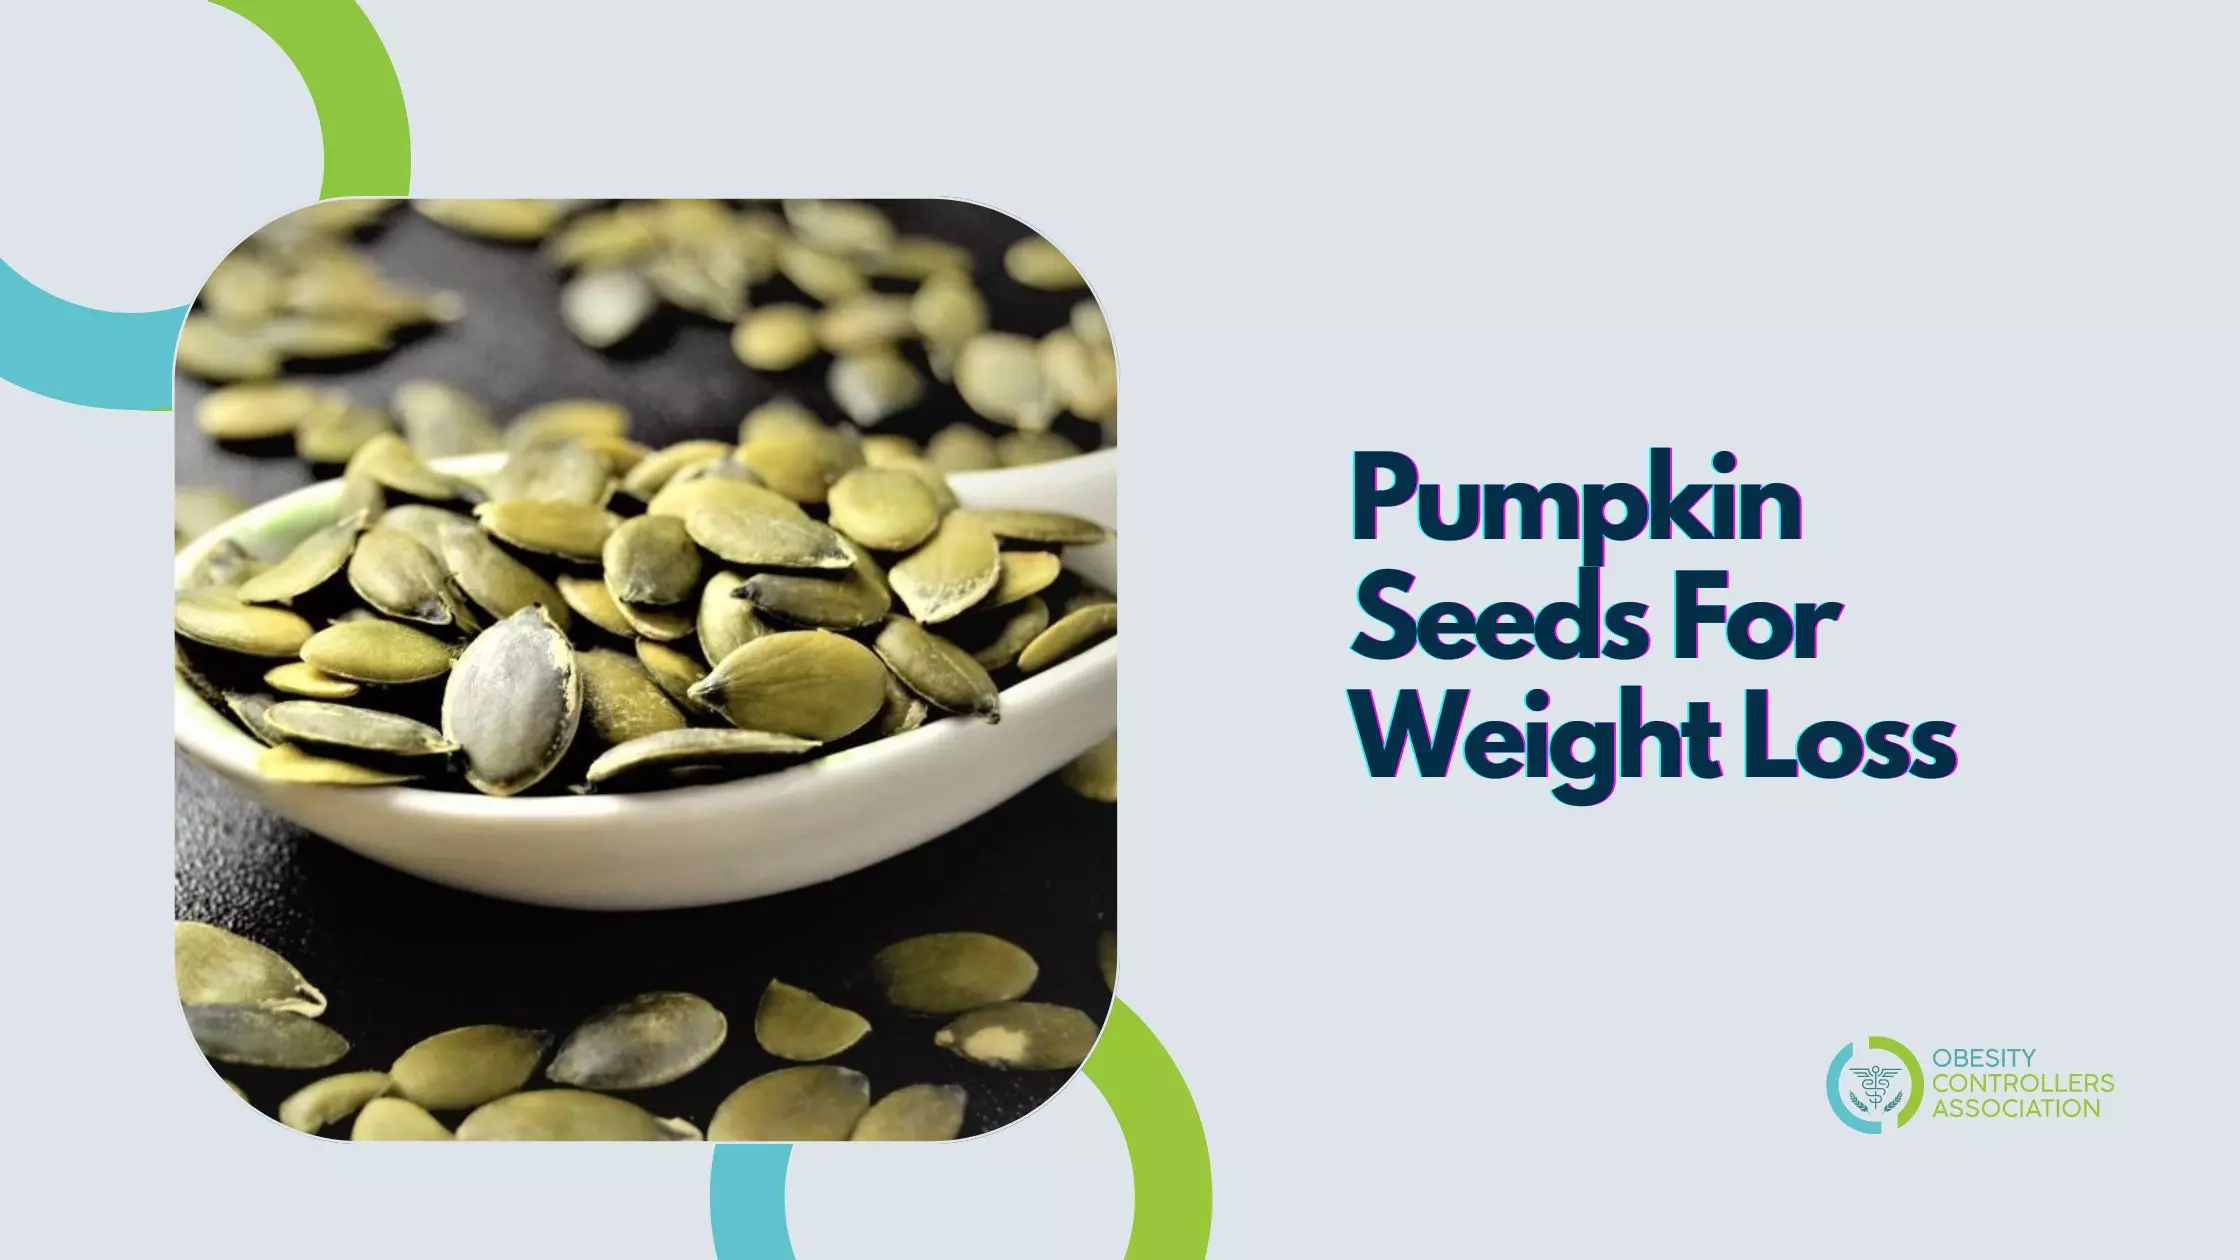 Pumpkin Seeds For Weight Loss